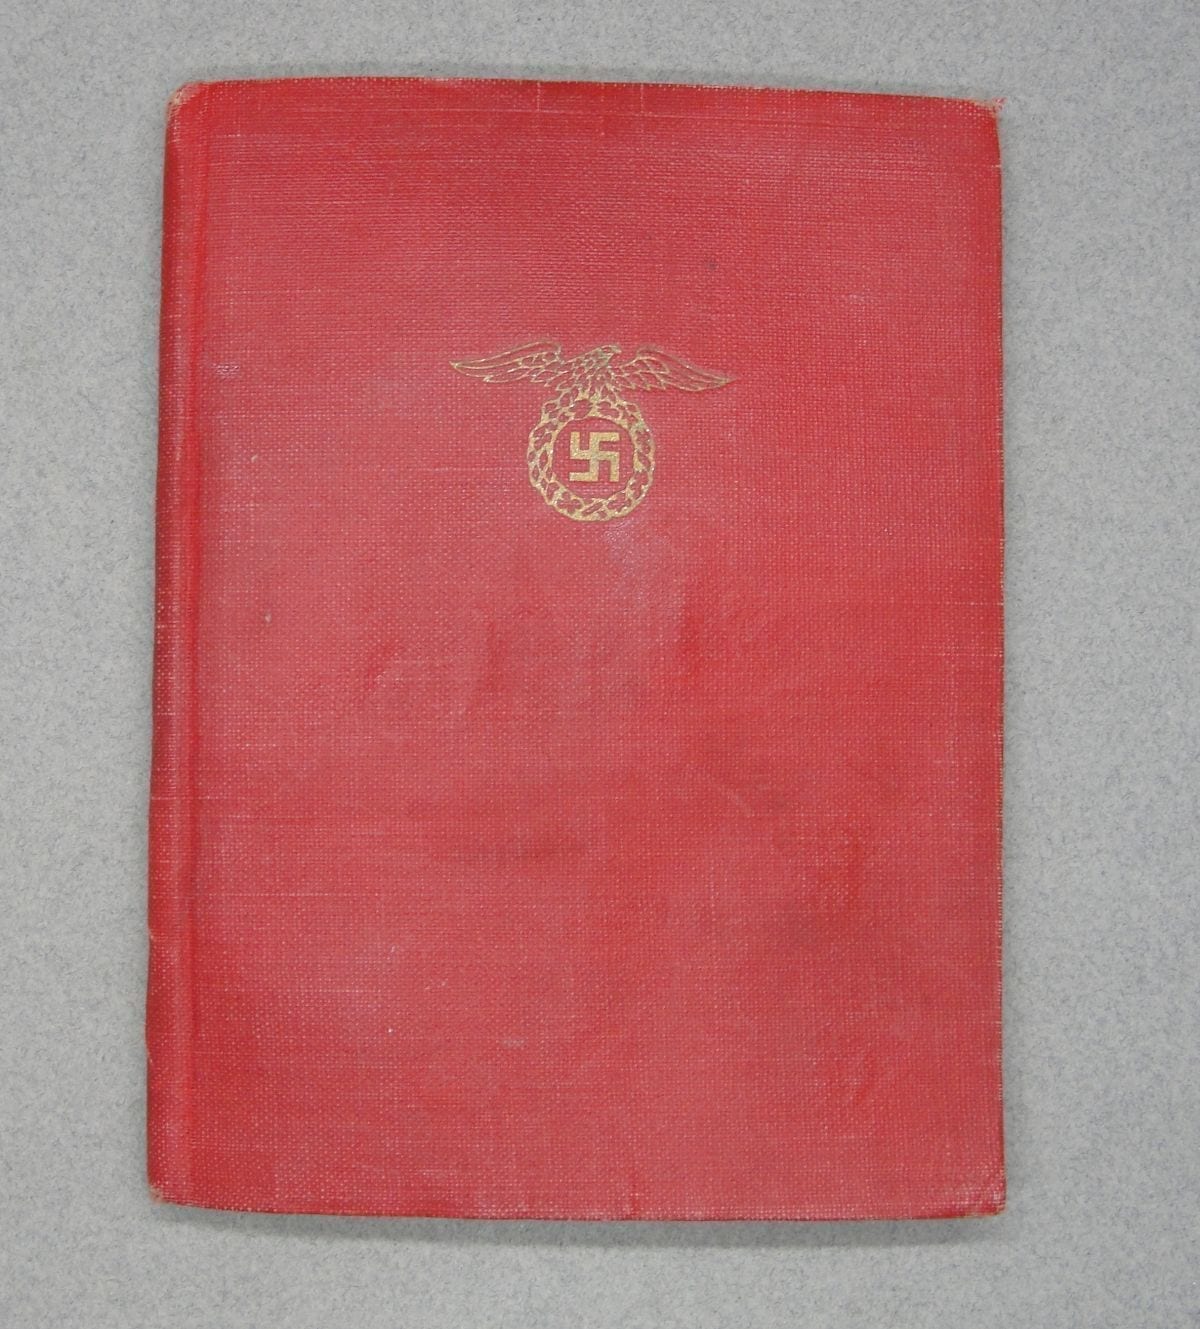 NSDAP Membership Book